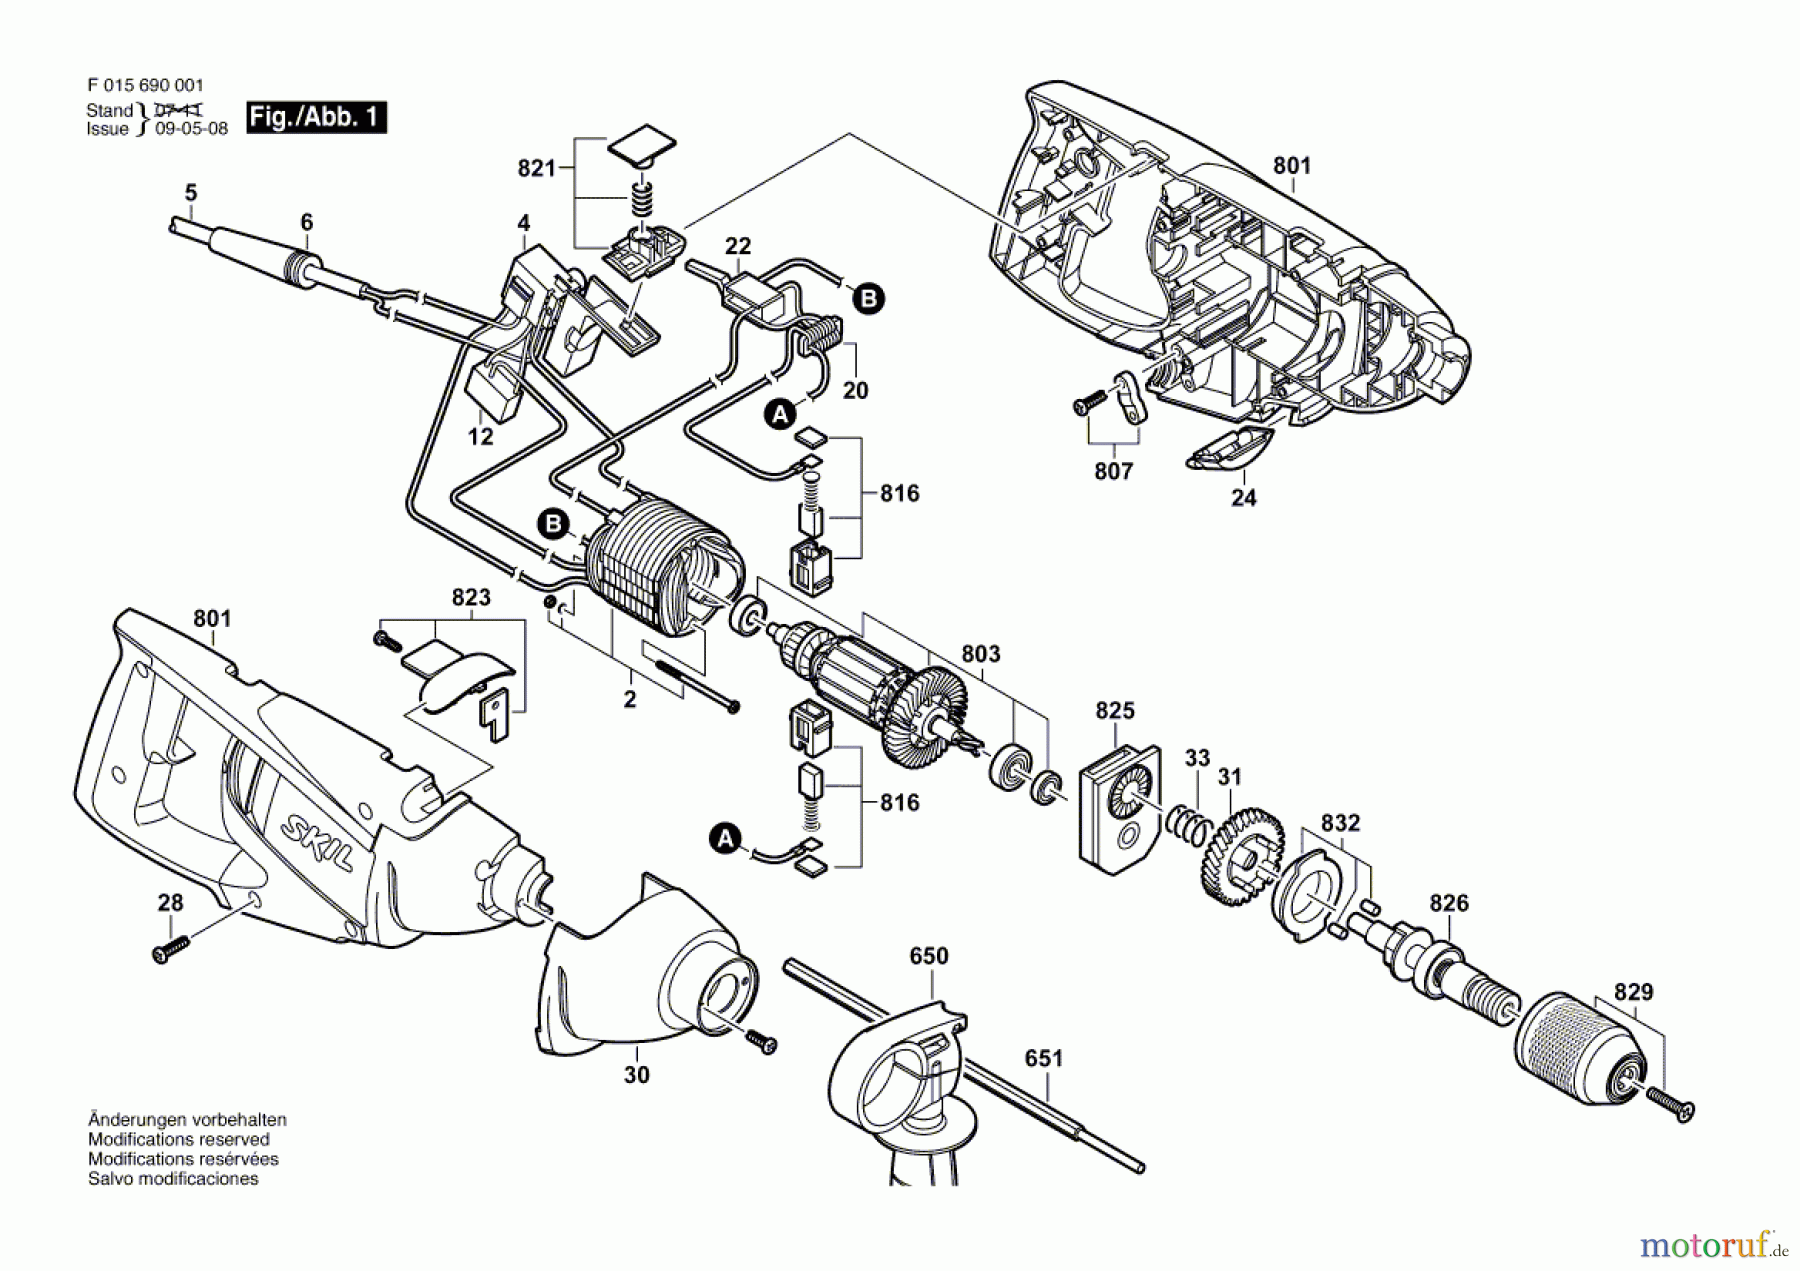  Bosch Werkzeug Schlagbohrmaschine 6910 Seite 1